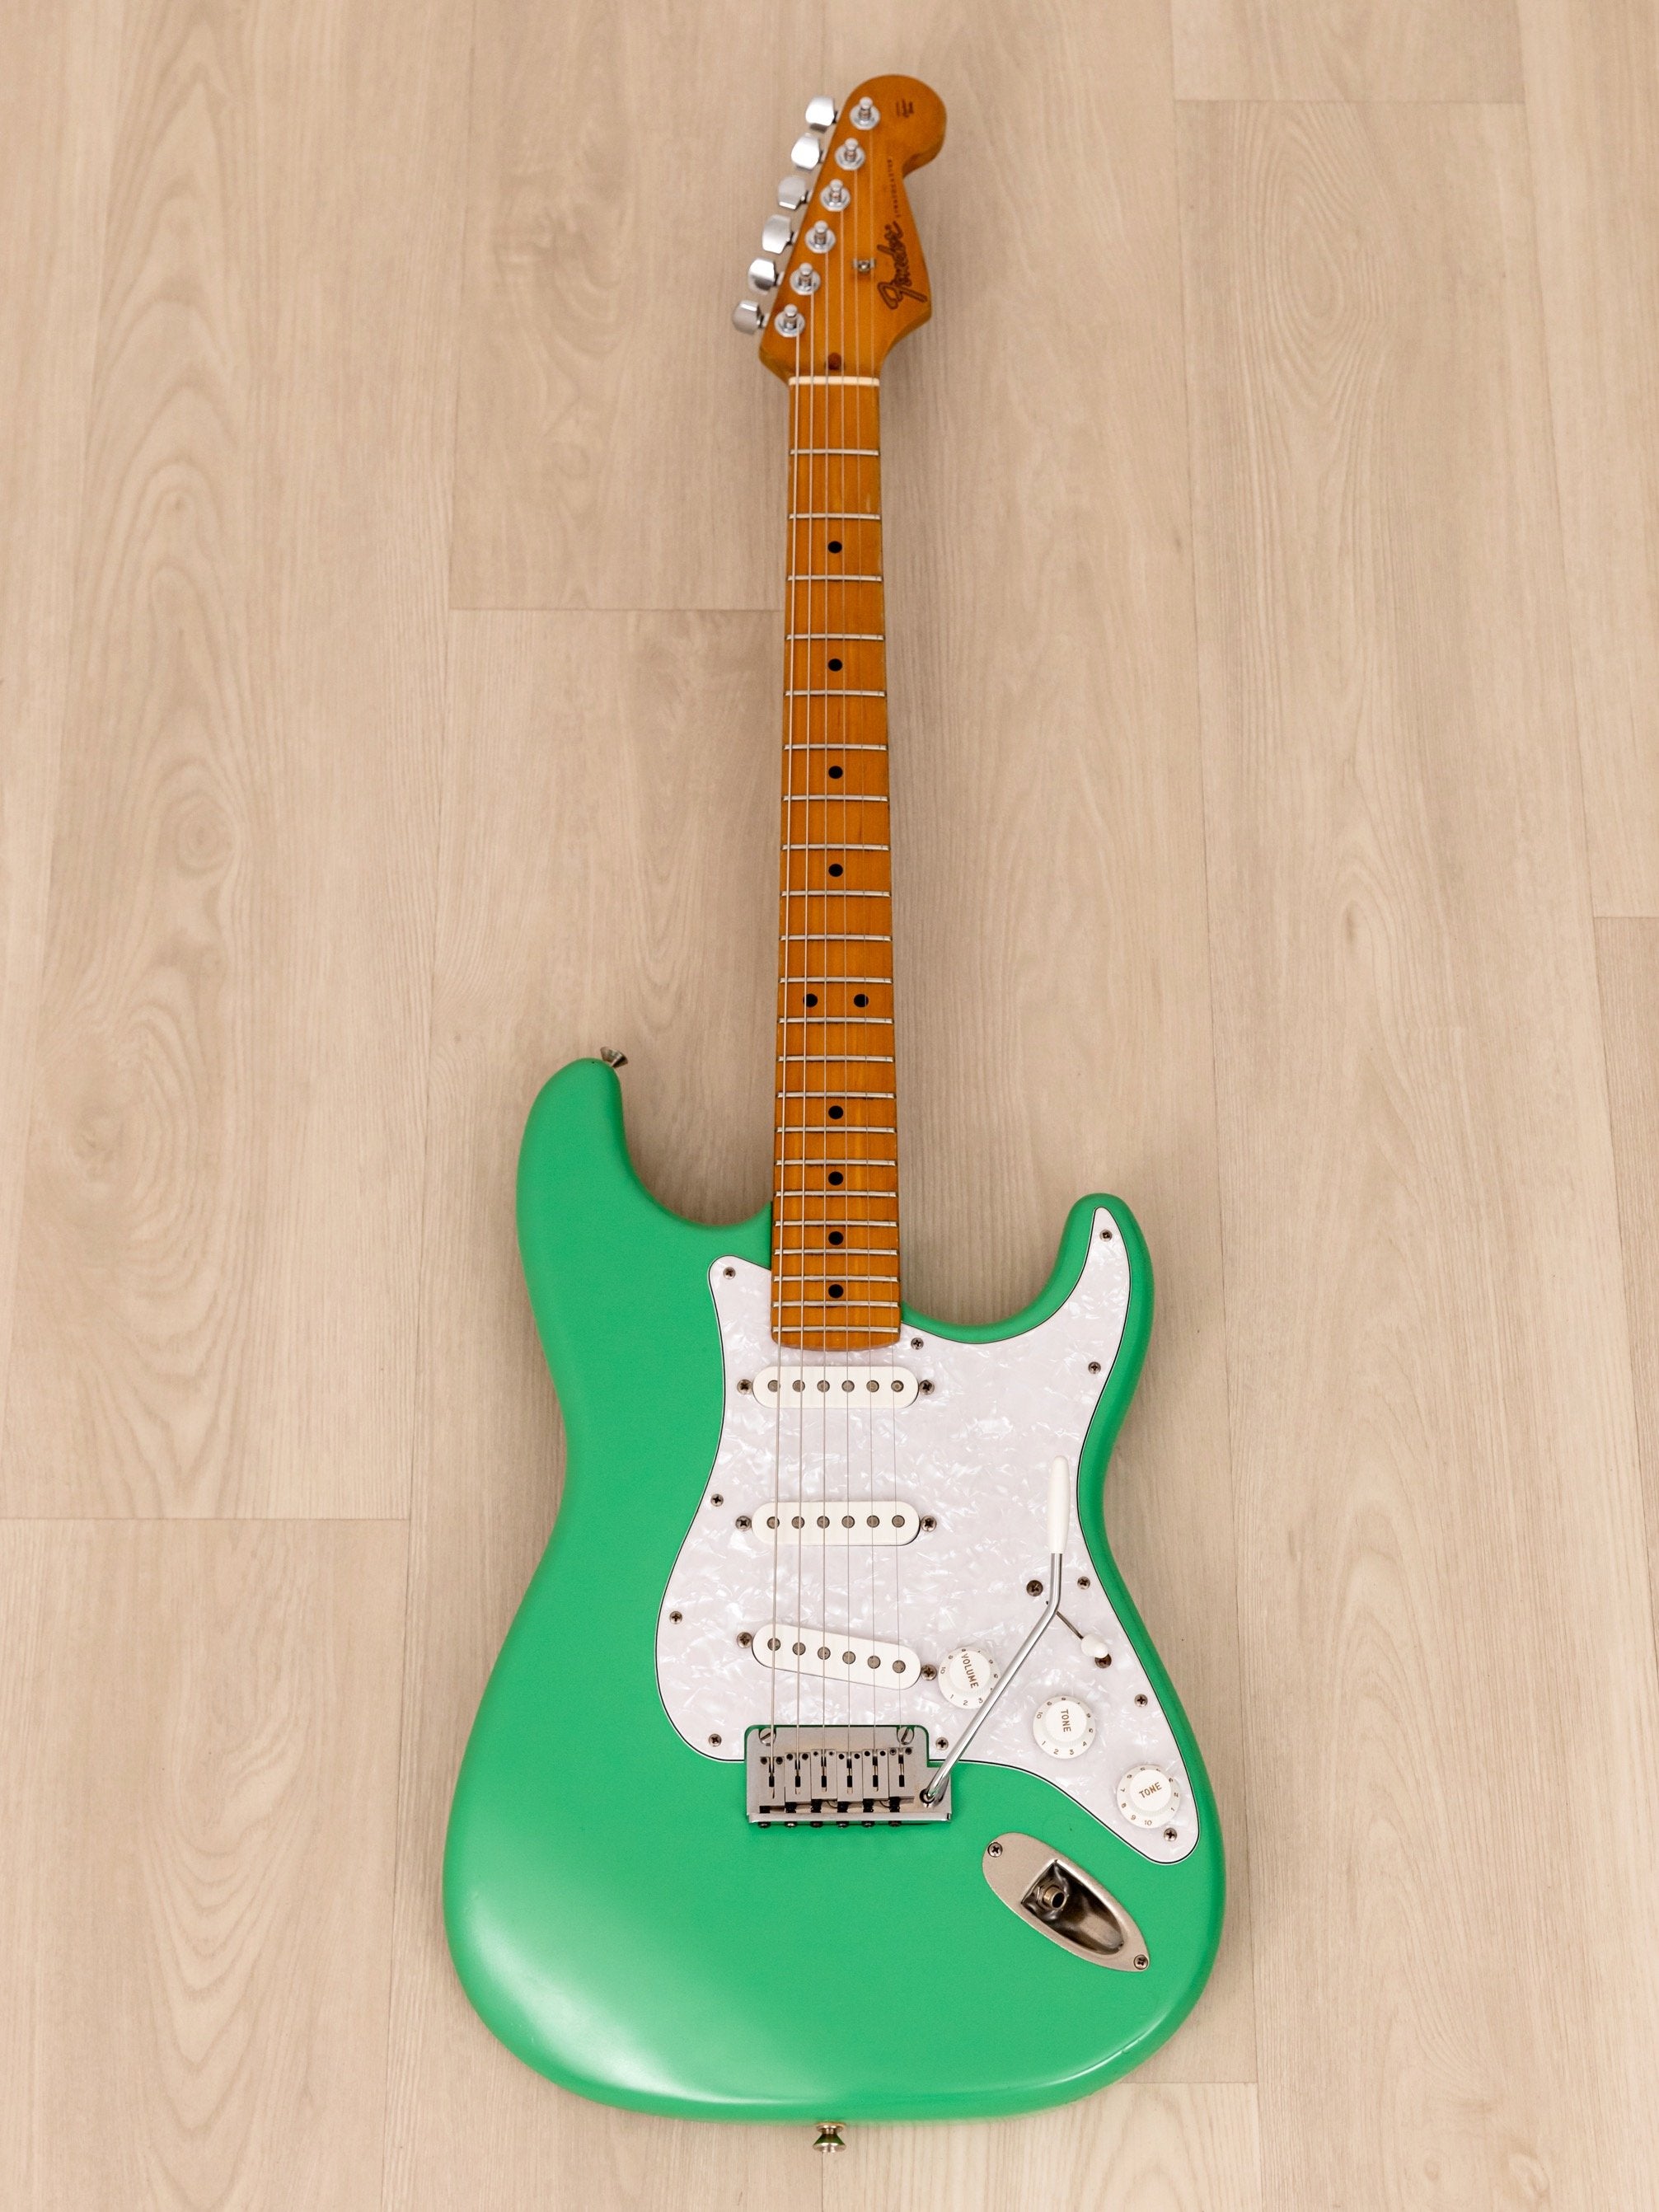 1989 Fender Japan Stratocaster ST650SPL w/ American Standard Tonewoods & Hardware, Seafoam Green, MIJ Fujigen